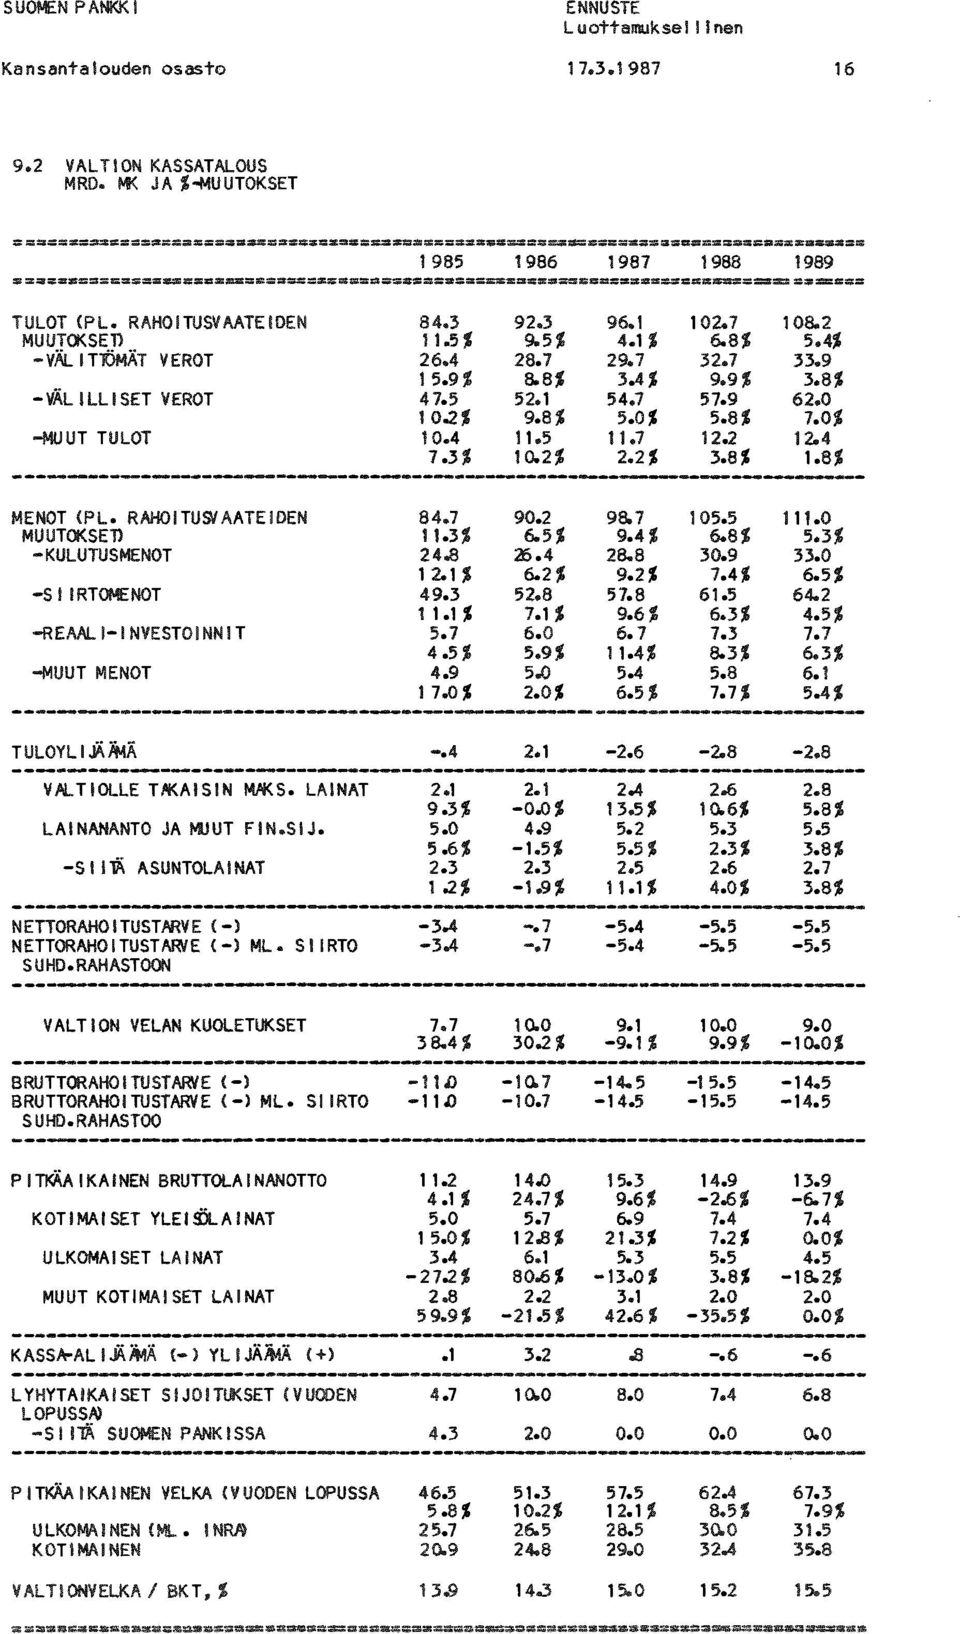 8% 5.0% 5.8% 11.5 11.7 12.2 10.2% 2.2% 3.8% 108.2 5.4$ 33.9 3.8% 62.0 7.0% 12.4 1.8% MENOT (PLo RAHOITUSlAATEiDEN MUUTOKSET> KULUTUSMENOT S IIRTOMENOT REAALIINVESTOINNIT MUUT MENOT 84.7 11.3% 24.8 12.